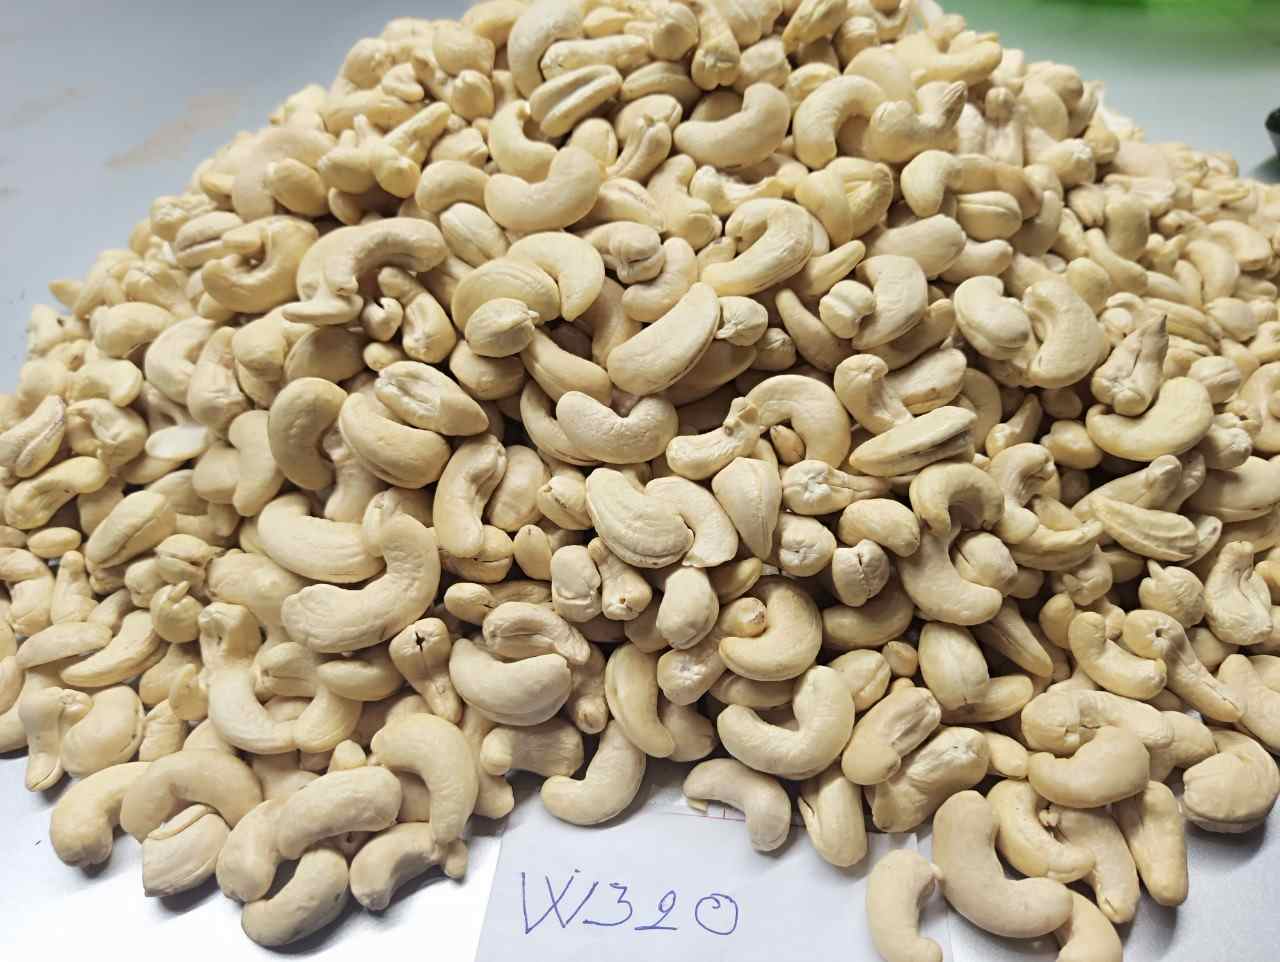 w320-vietnam-cashew-nut-4